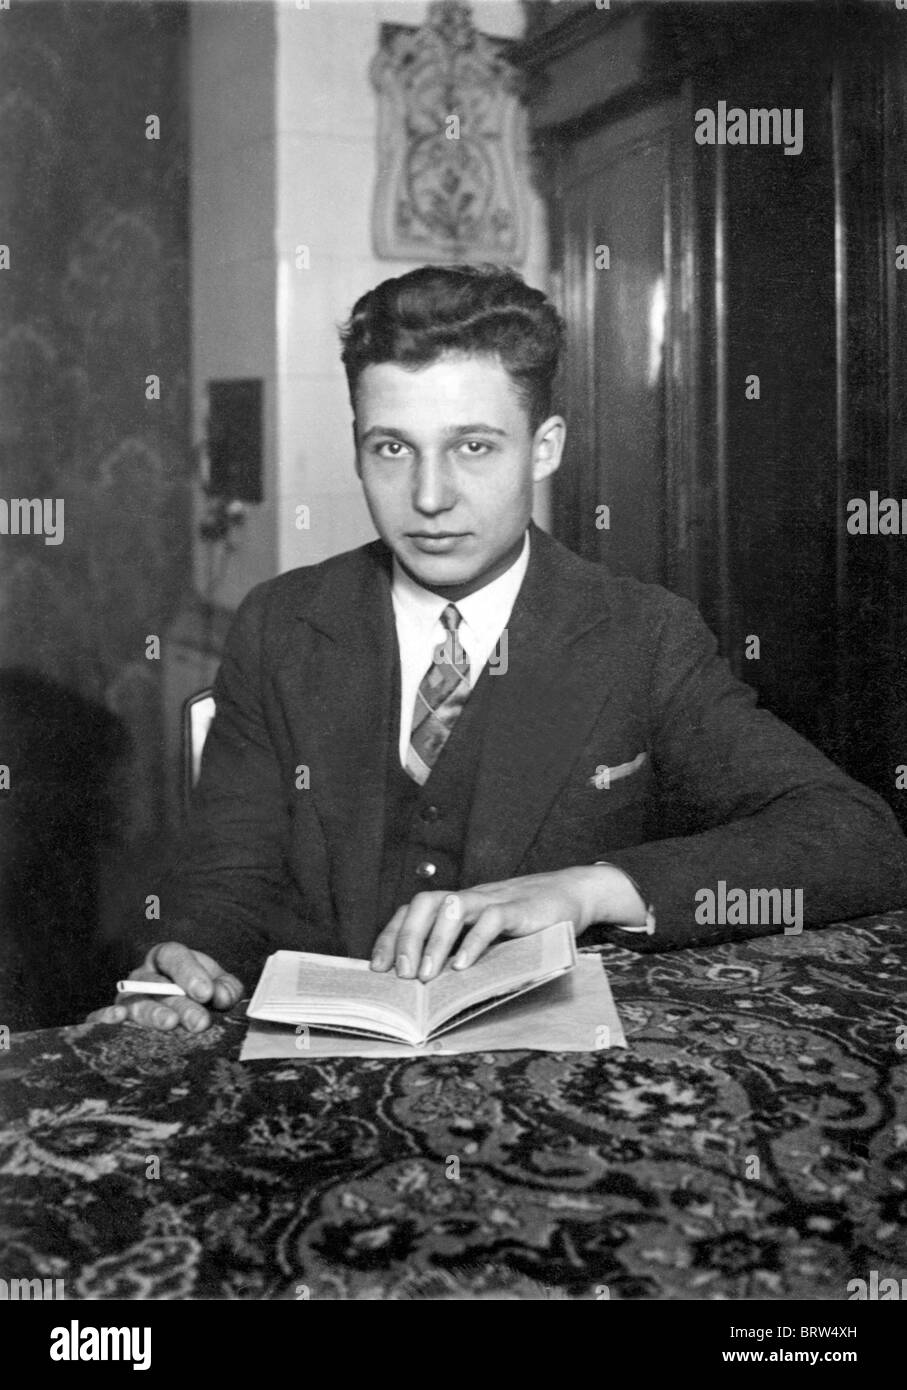 Hombre con un libro, una imagen histórica, ca. 1936 Foto de stock